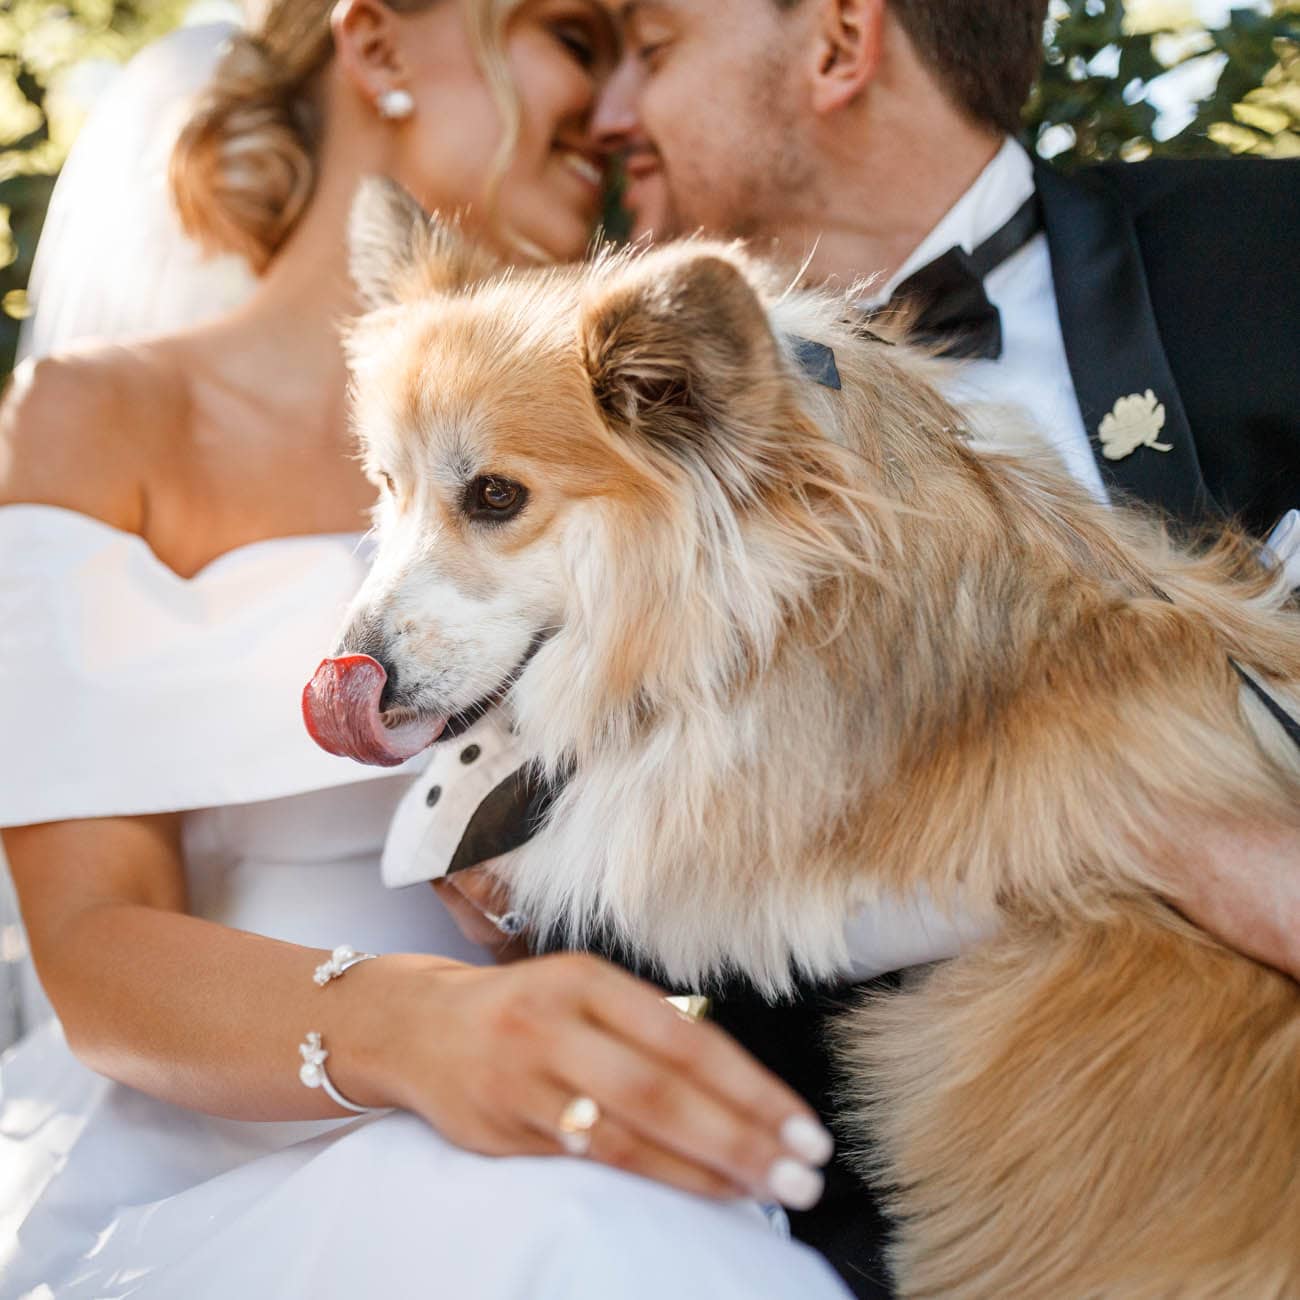 Dogs in weddings 033 1